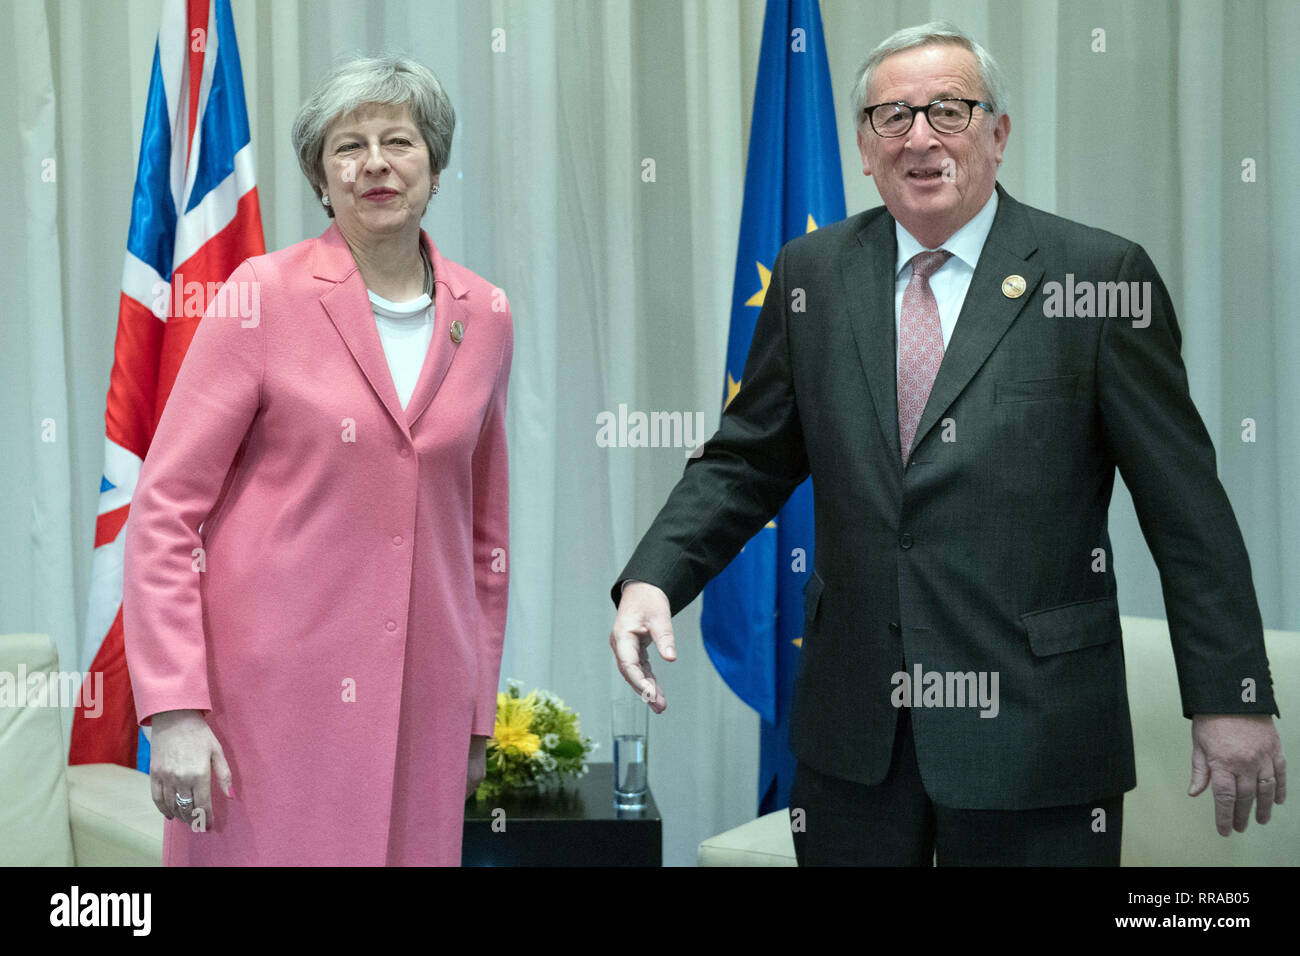 Premier ministre Theresa peut tenir une réunion bilatérale avec le président de la Commission européenne, Jean-Claude Juncker lors de la participation à la Ligue des États arabes sommet de Charm el-Cheikh, en Égypte. Banque D'Images